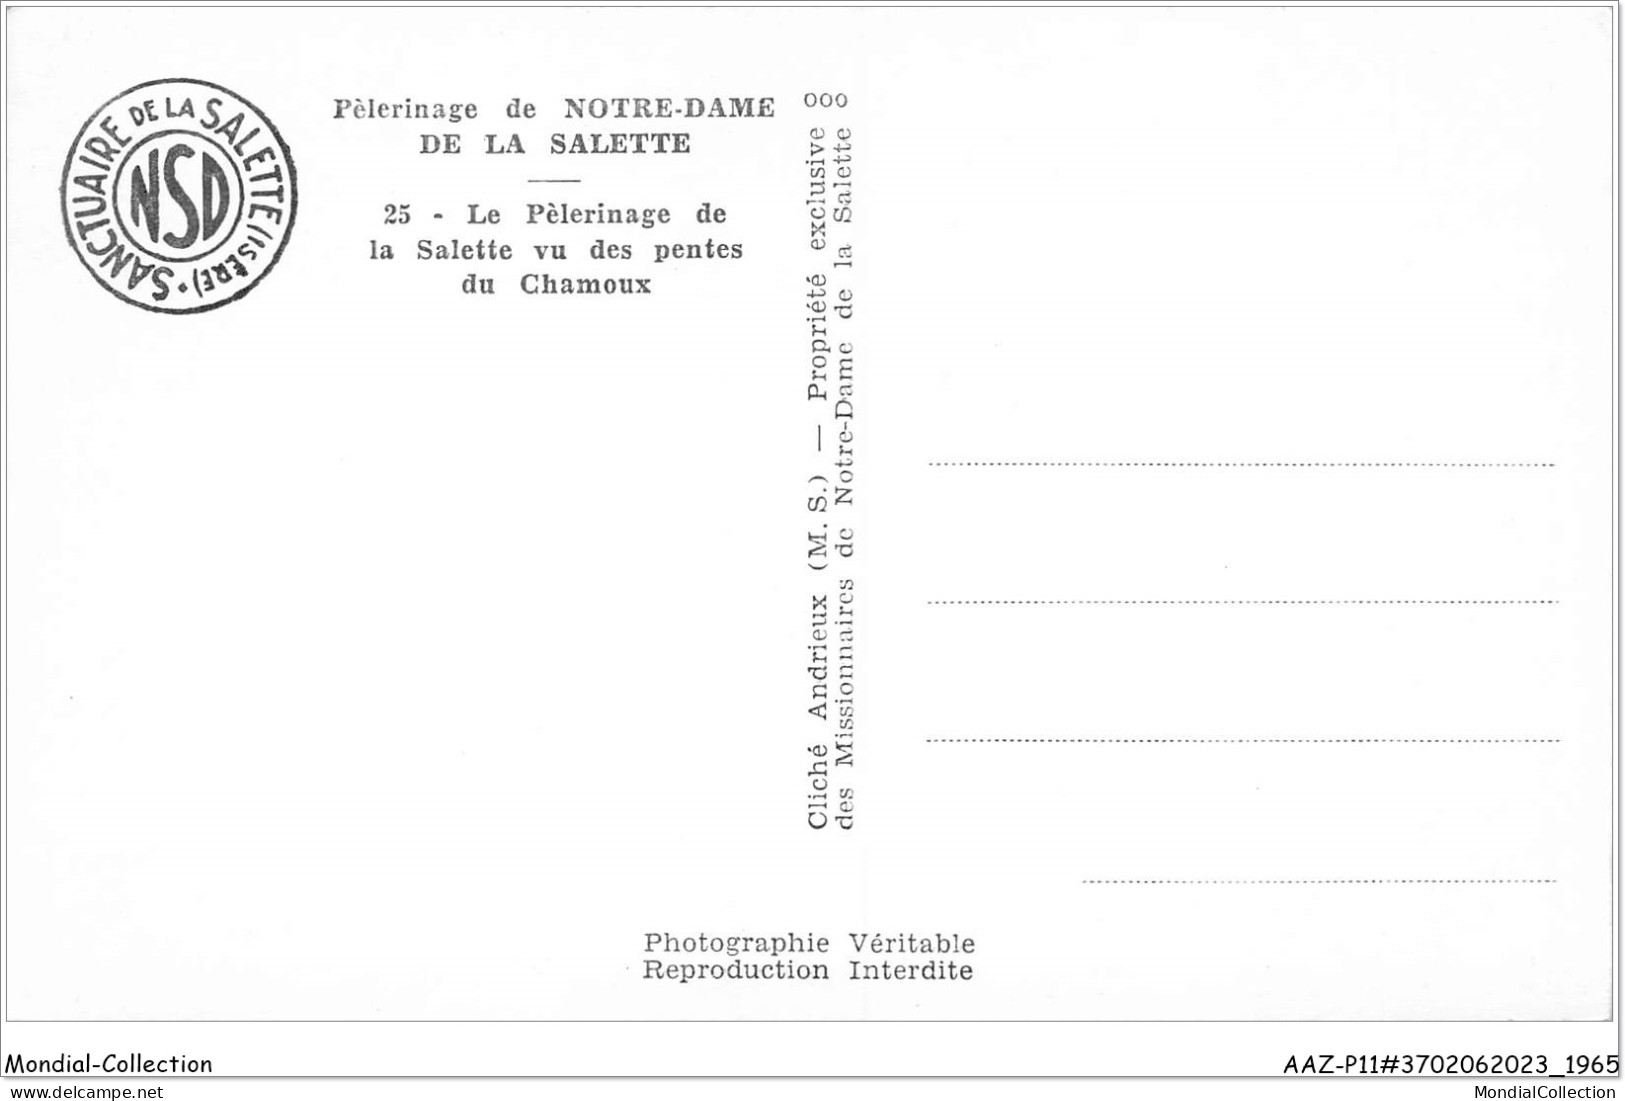 AAZP11-37-0987 - Pelerinage NOTRE DAME DE LA SALETTE - Le Pelerinage De LA SALETTE Vu Des Pentes  - La Salette